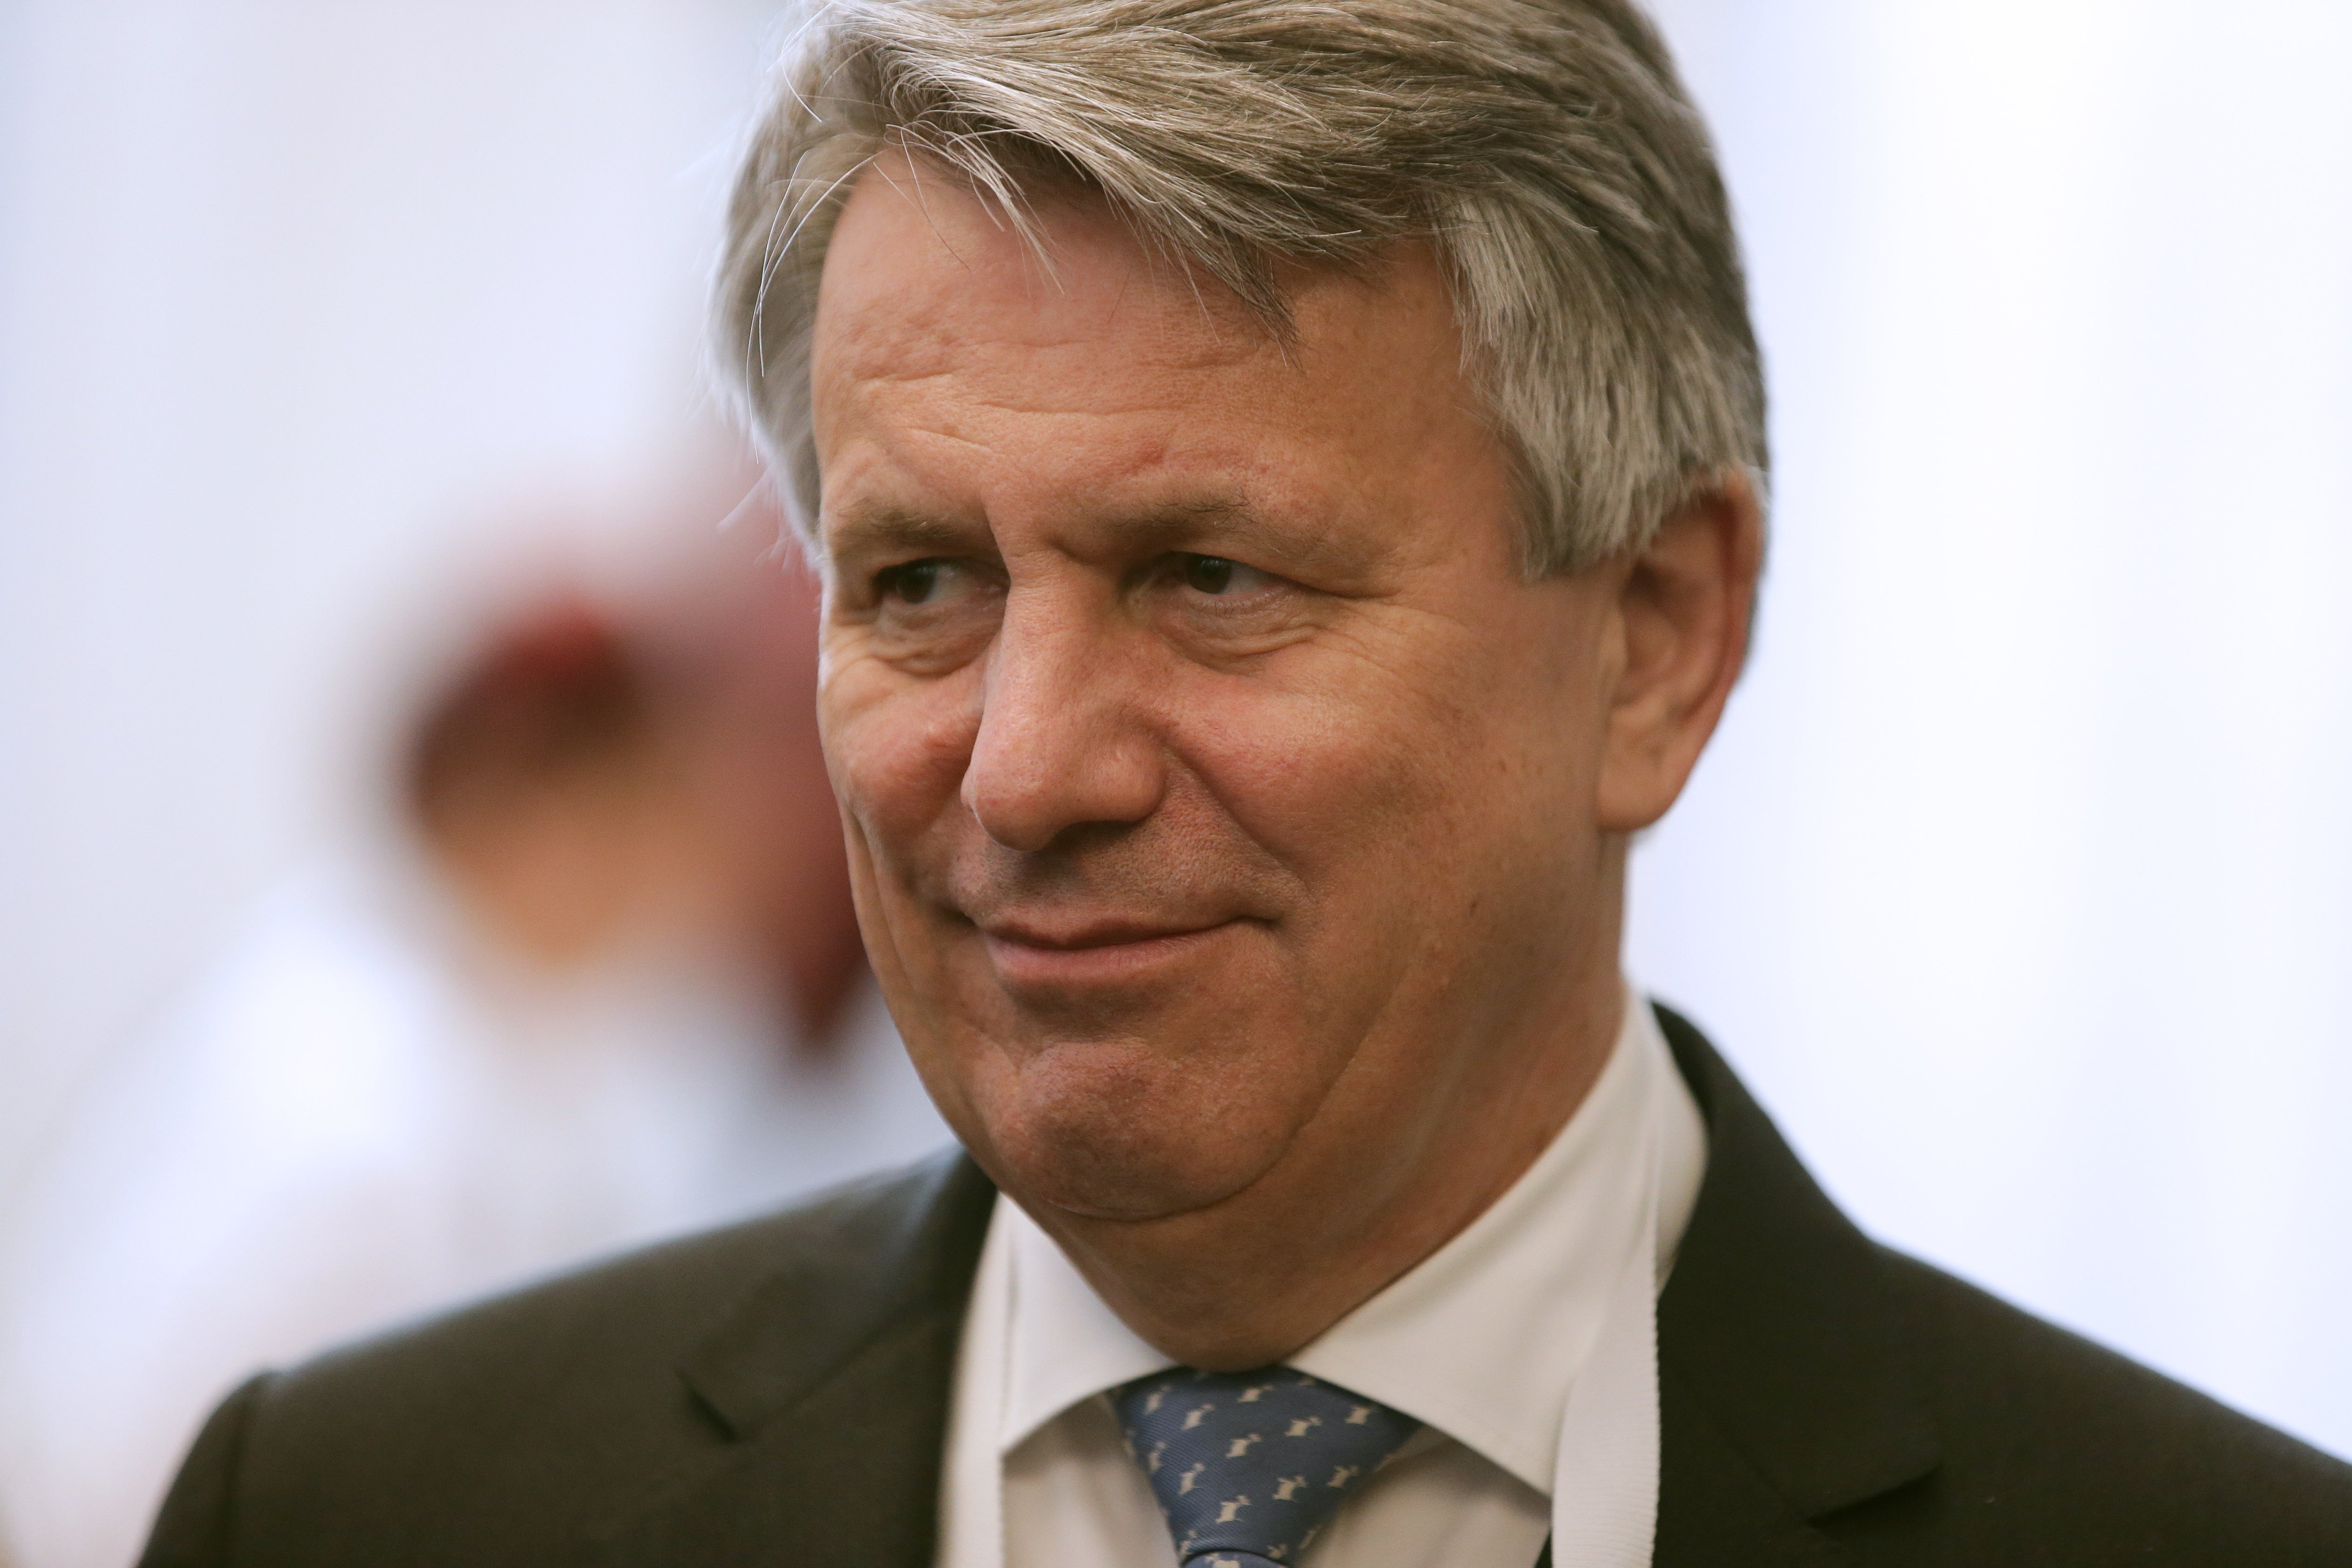 Shell boss Ben van Beurden said the actions of Russia in Ukraine was “senseless”. (Daniel Leal-Olivas/PA)